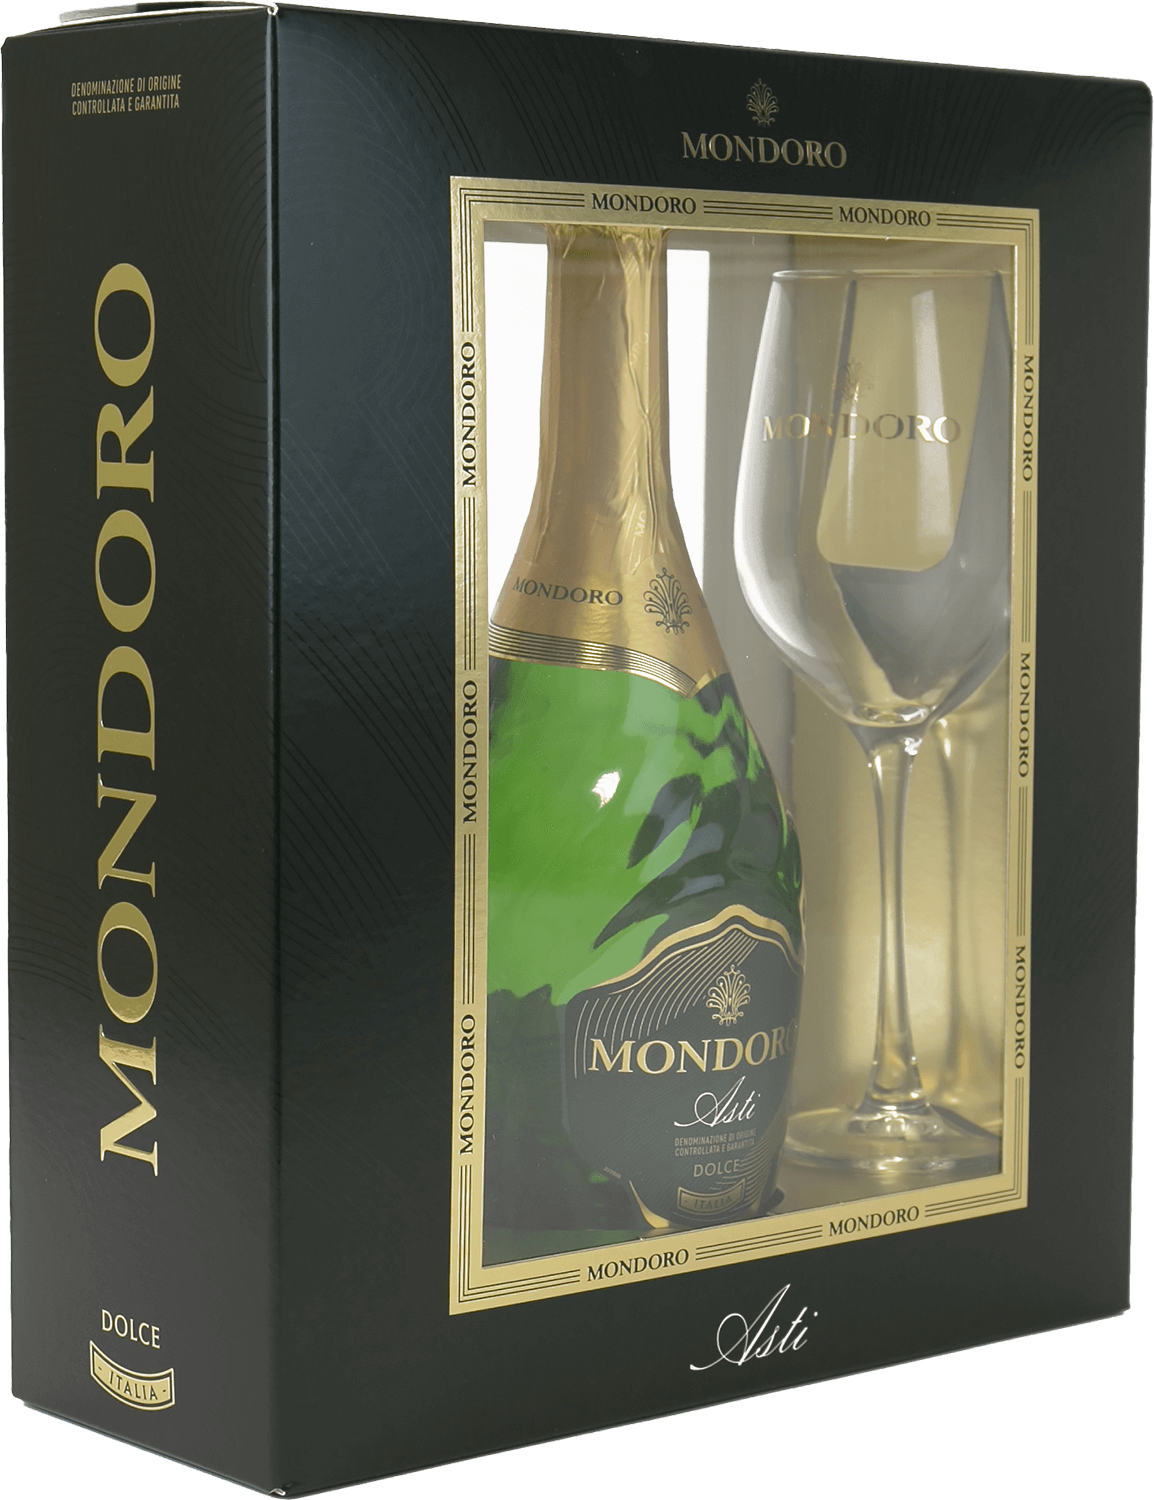 mondoro prosecco doc rose campari gift box Mondoro Asti DOCG Campari (gift box with 2 glasses)